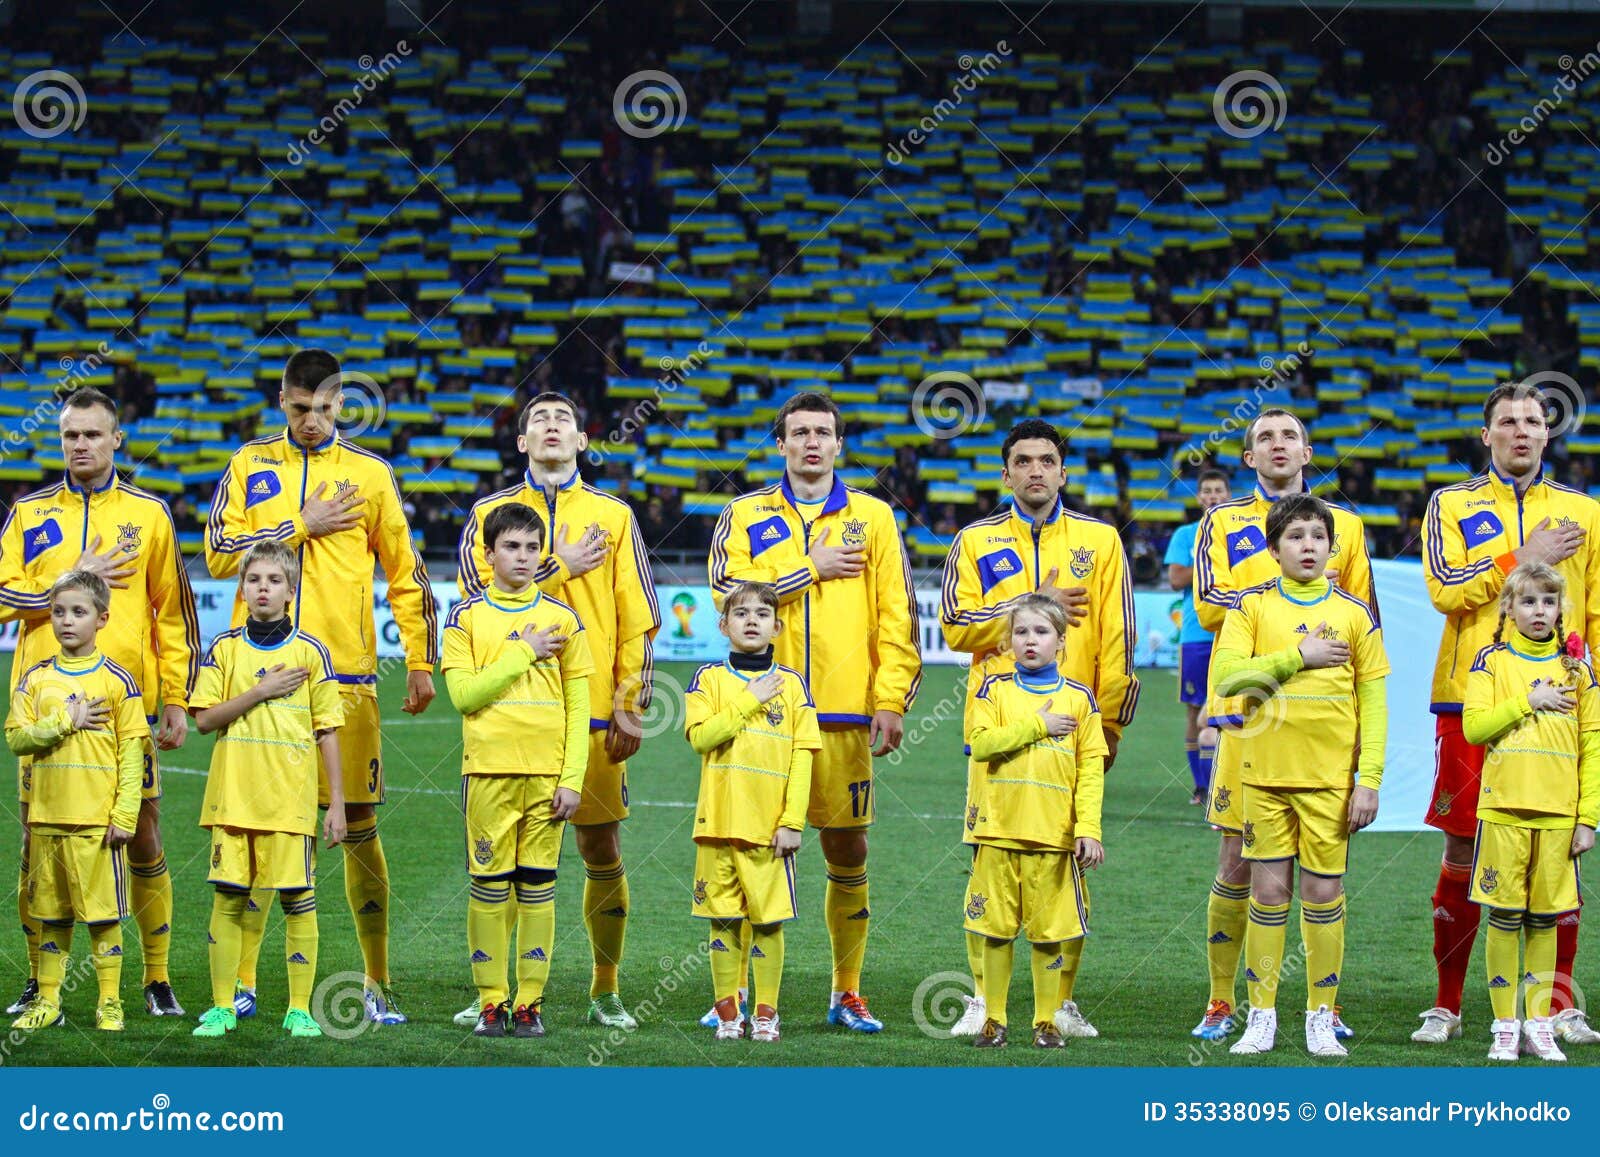 Ukraine National Football Team Editorial Image - Image: 35338095